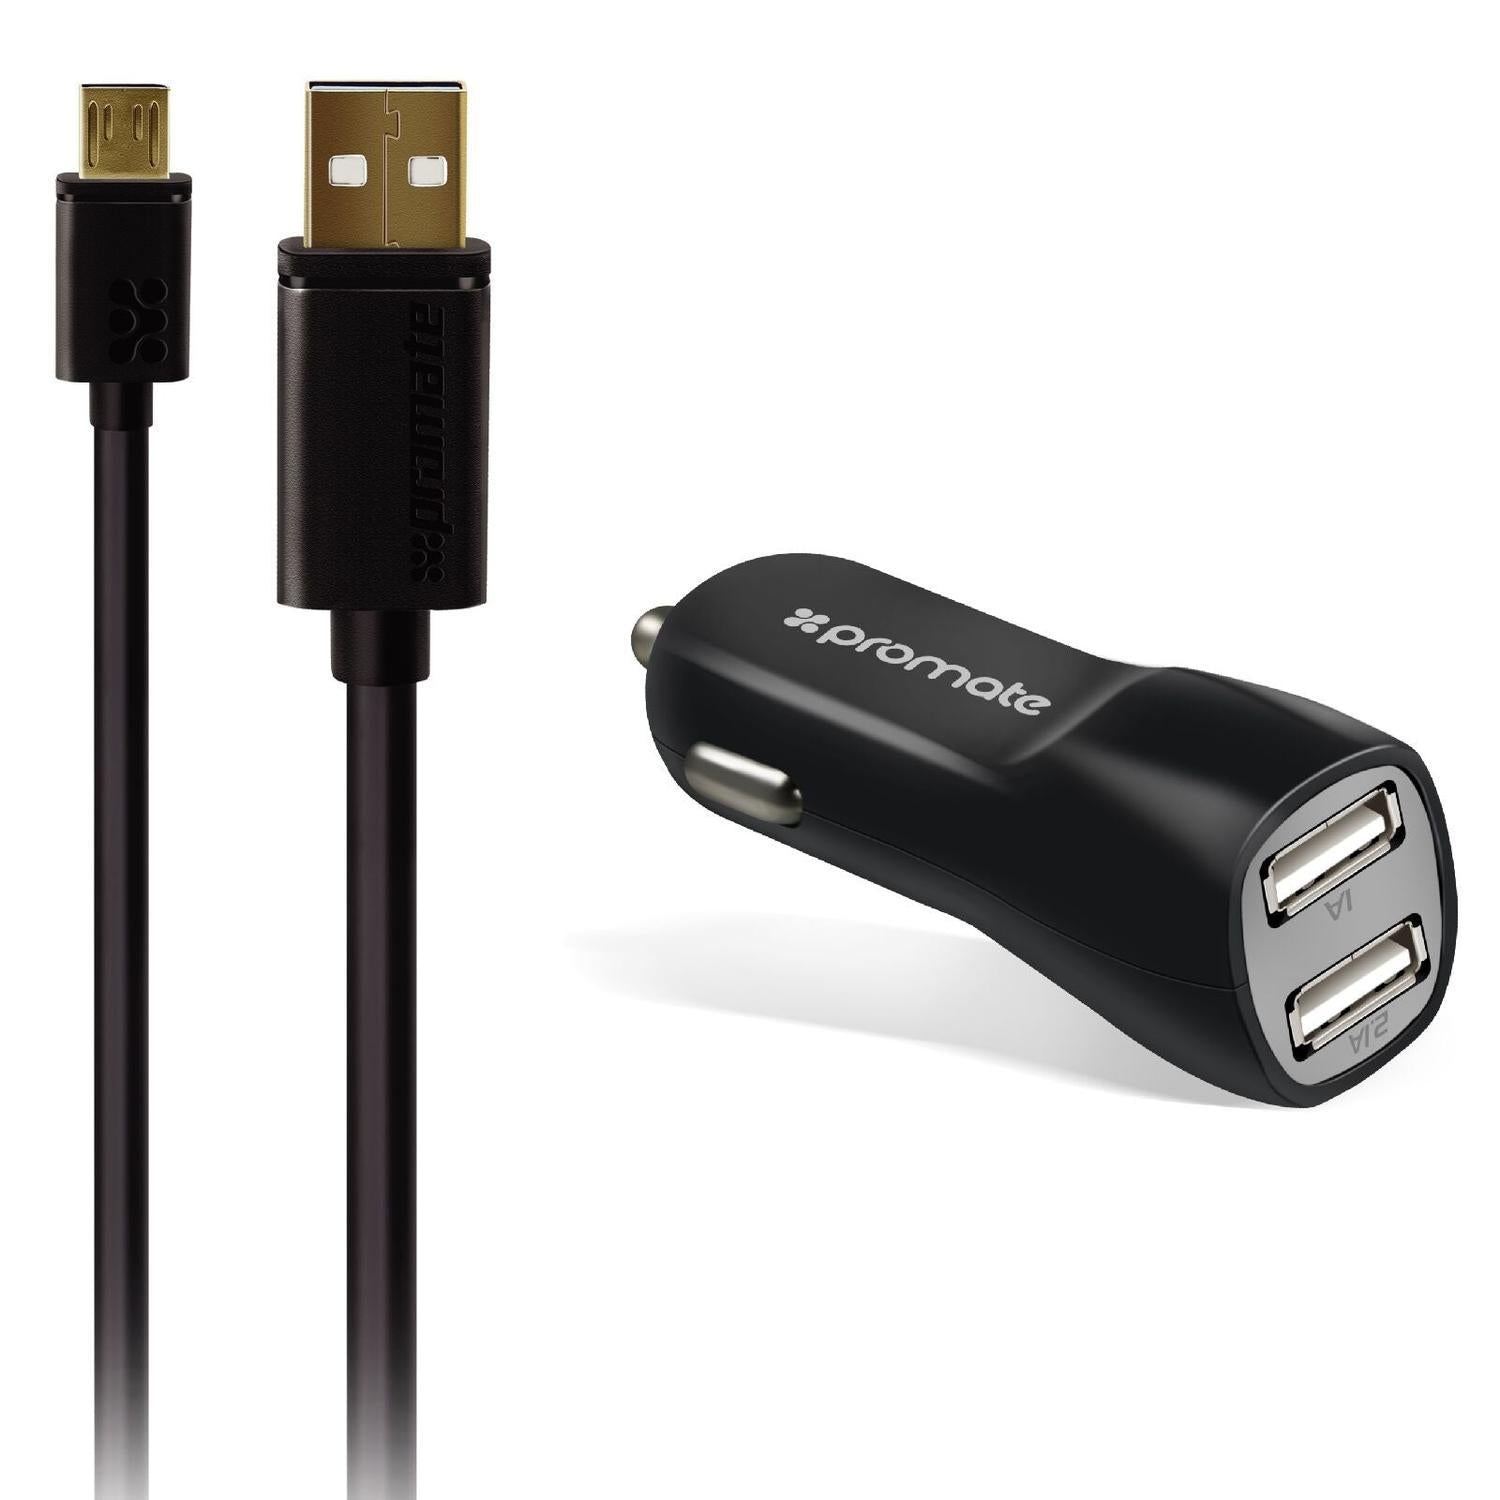 Promate Carkit-M Charger Kit 2Port 3.1a USB bil lader og USB-kabel 1.2m svart